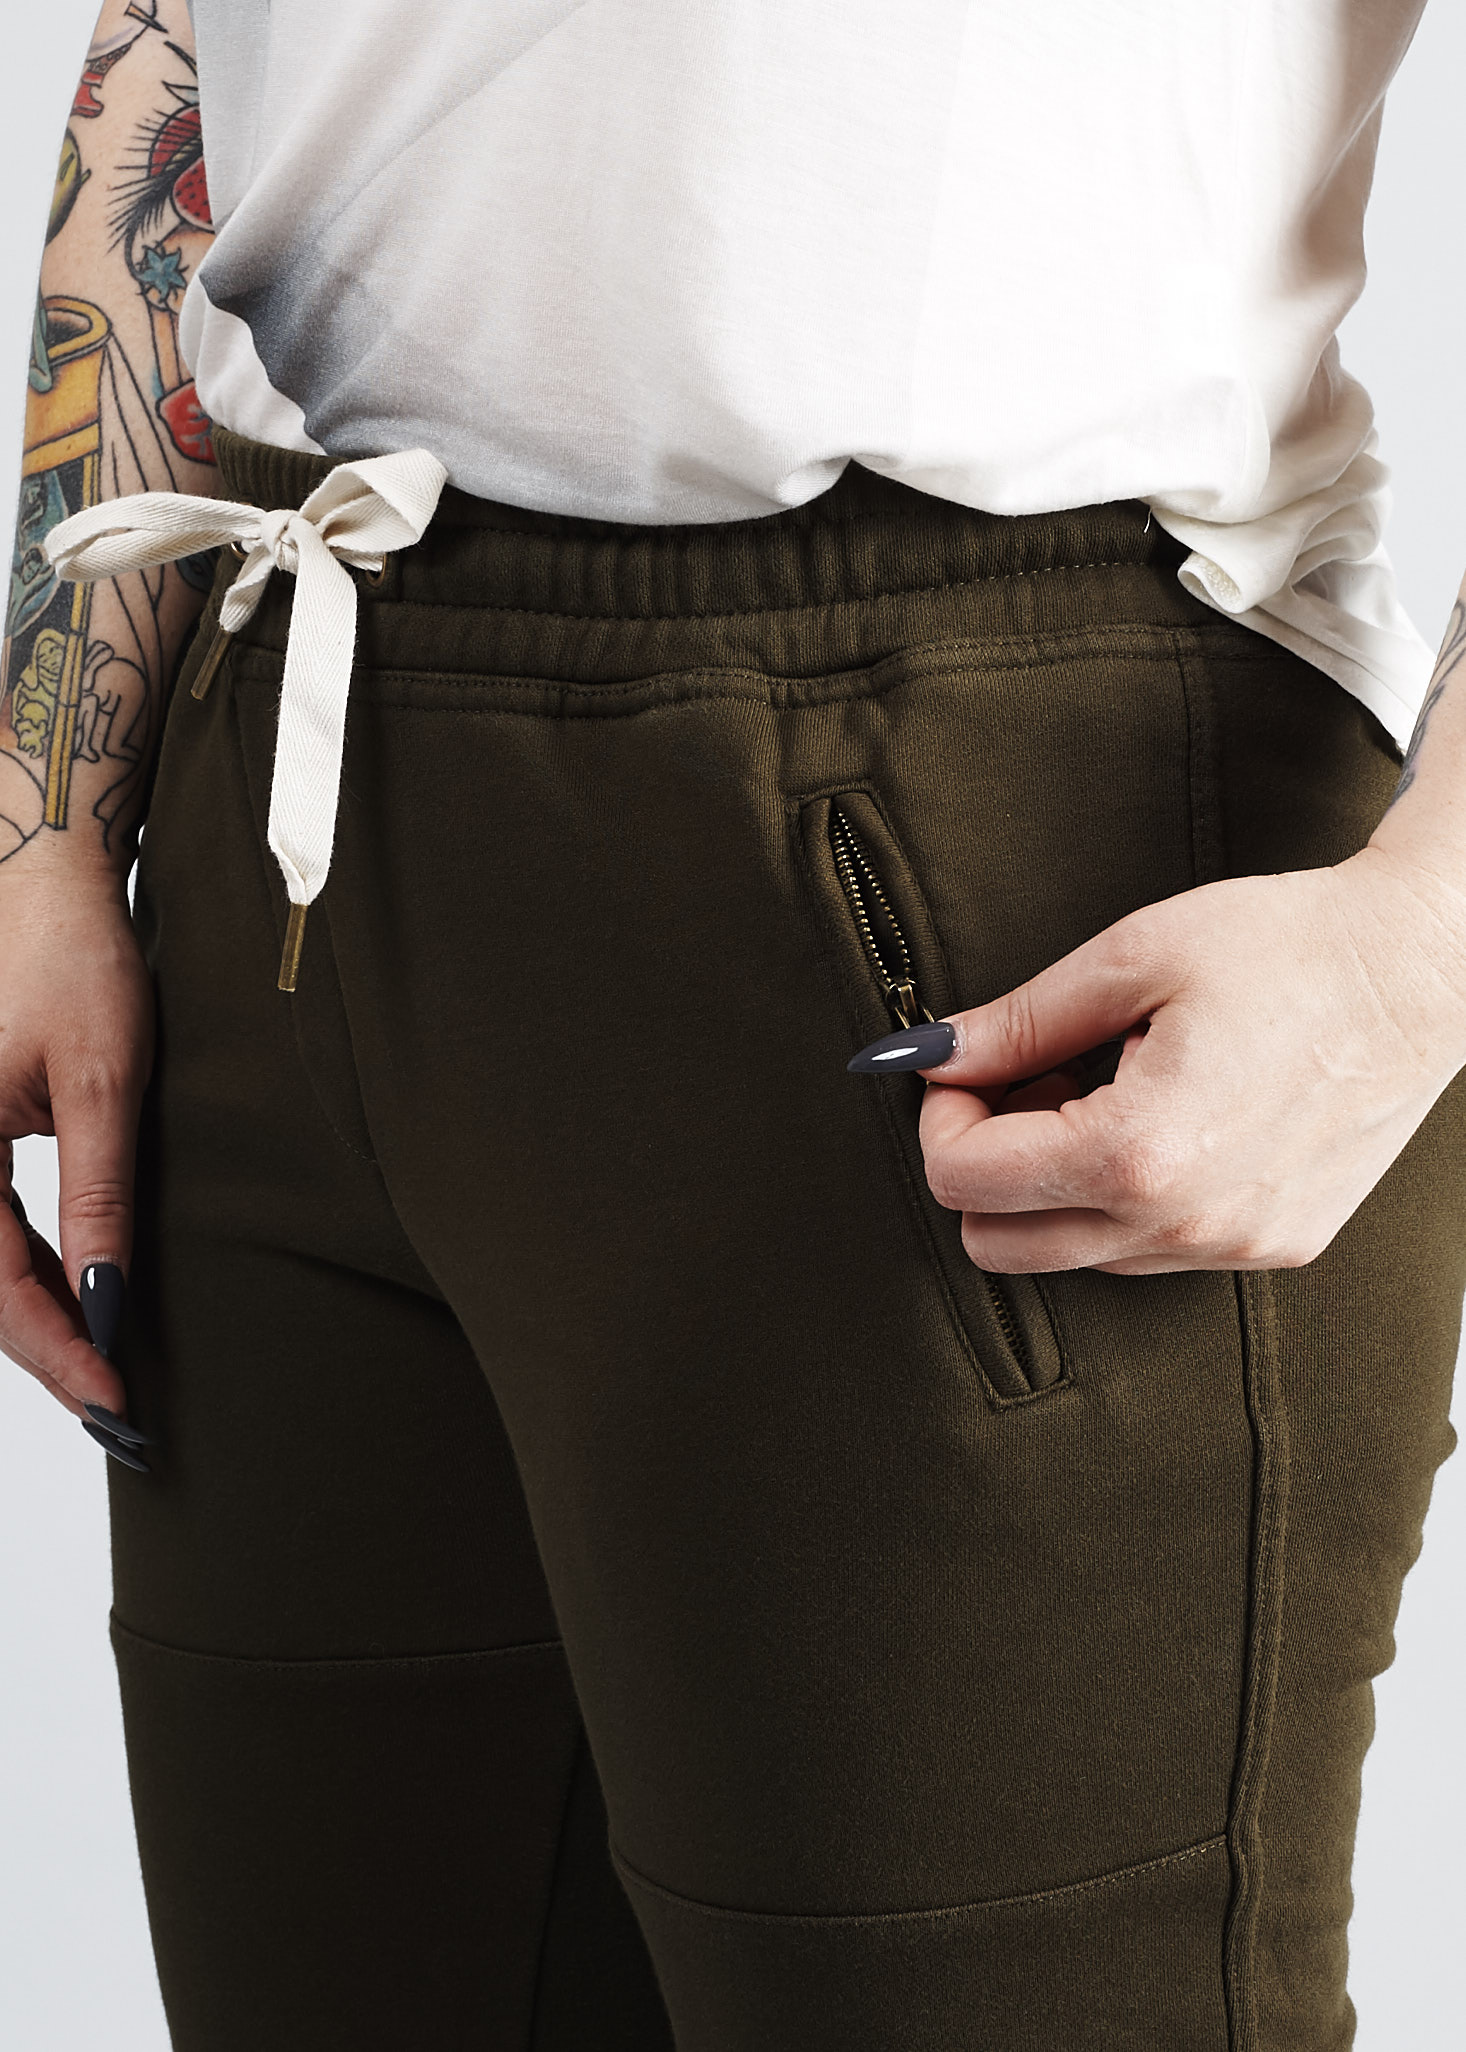 detail of zipper pocket of Summer & Sage Jogger pants on Marne